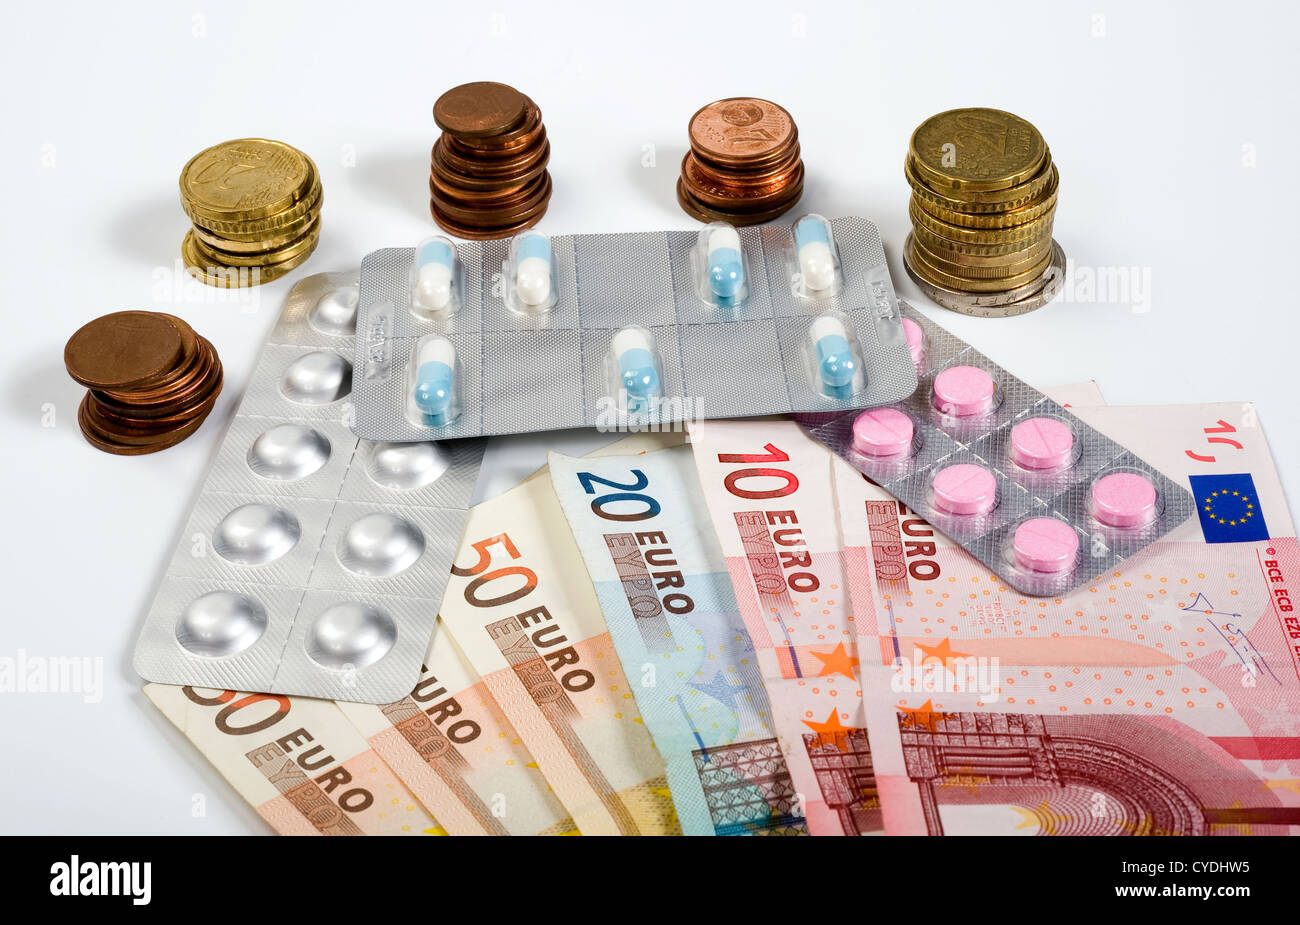 Medicamentos, tabletas, píldoras y las monedas de euro con papel moneda Foto de stock